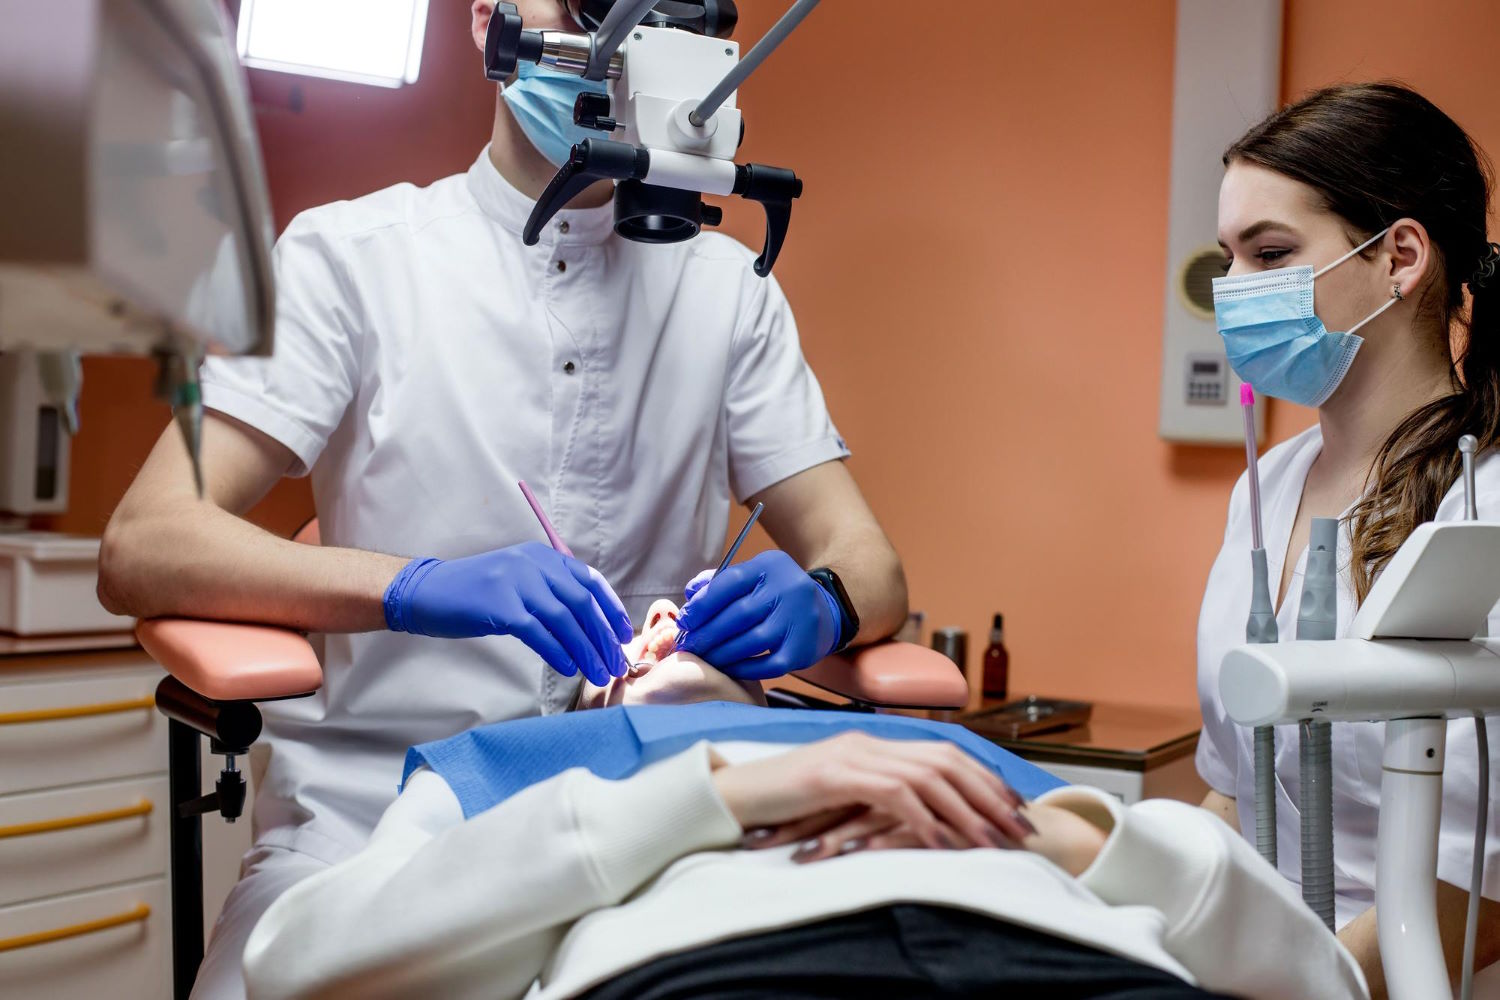 Mikroskopowa stomatologia – leczenie zębów z najwyższą precyzją